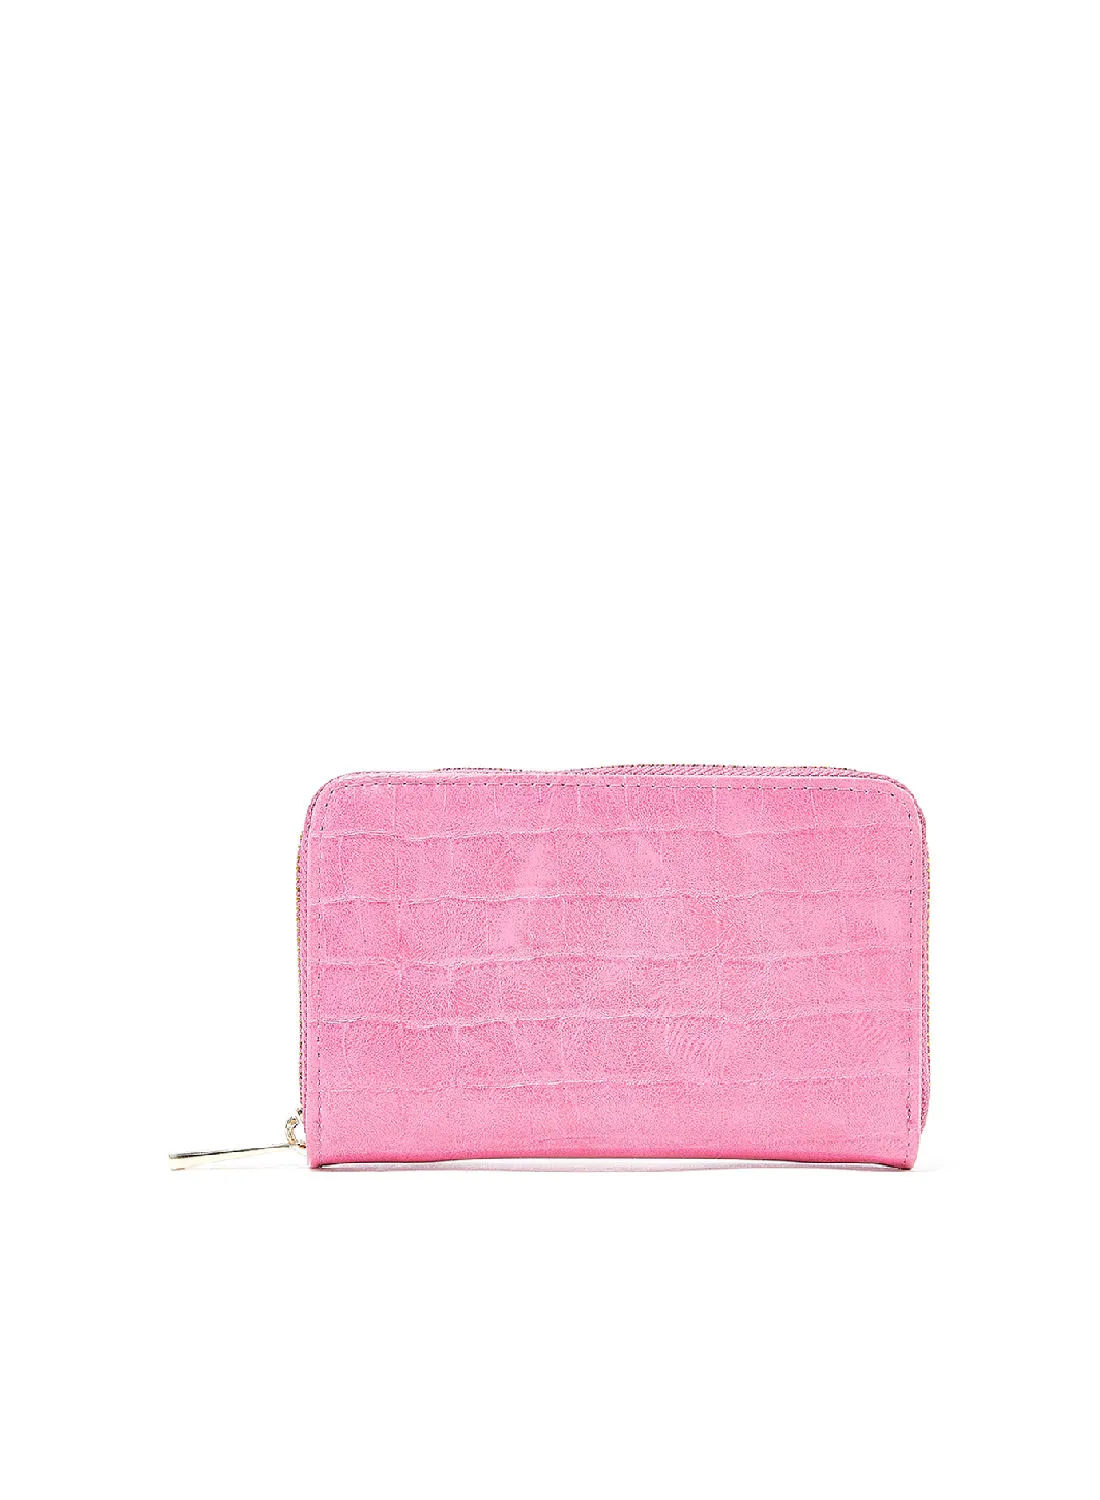 Jove Croc Effect Wallet Pink